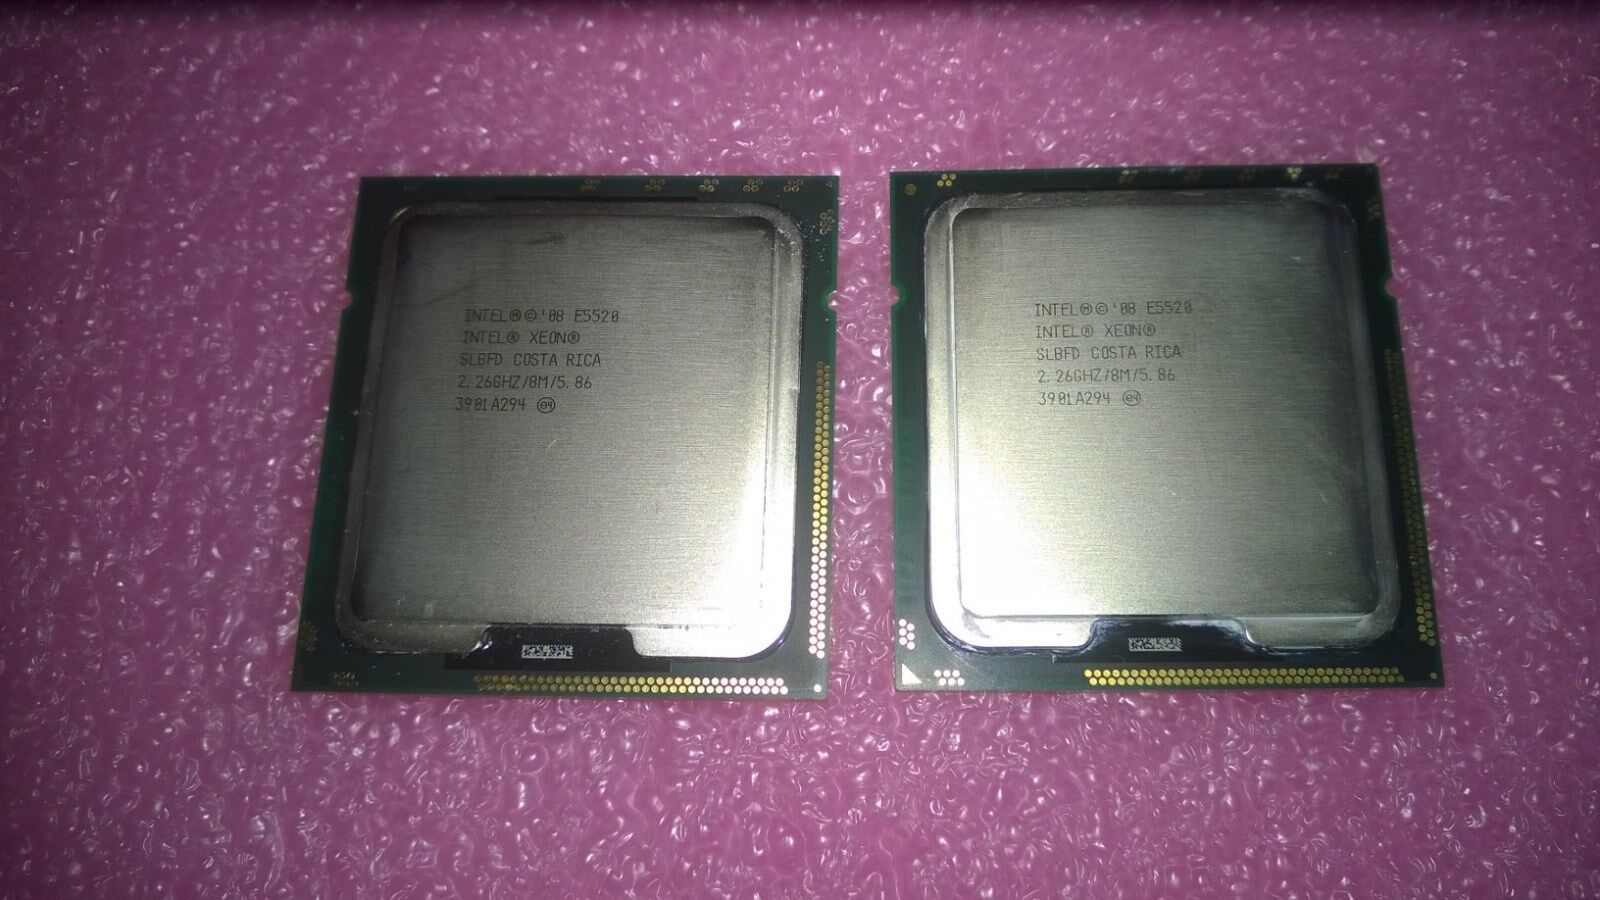 2x Intel SLBFD Xeon Processor E5520 2.26GHz/8M/5.86 